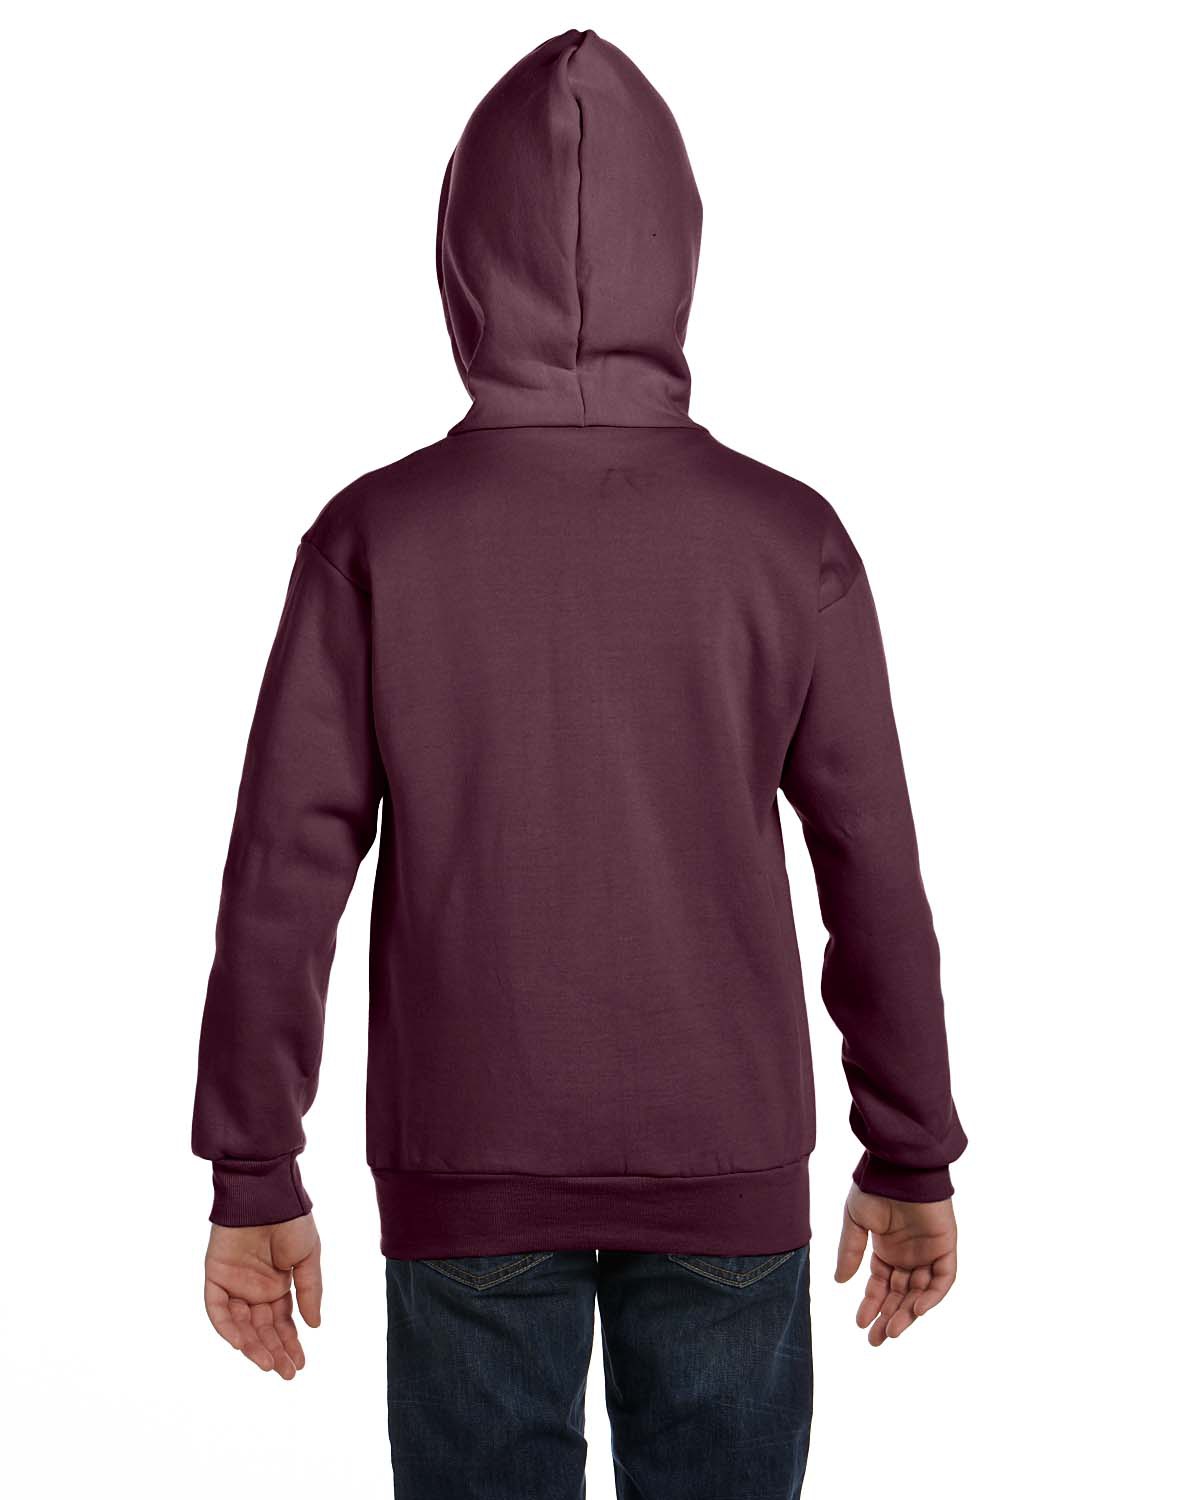 'Hanes P480 Comfortblend EcoSmart Full Zip Kids 7.8 oz Hoodie Sweatshirt'